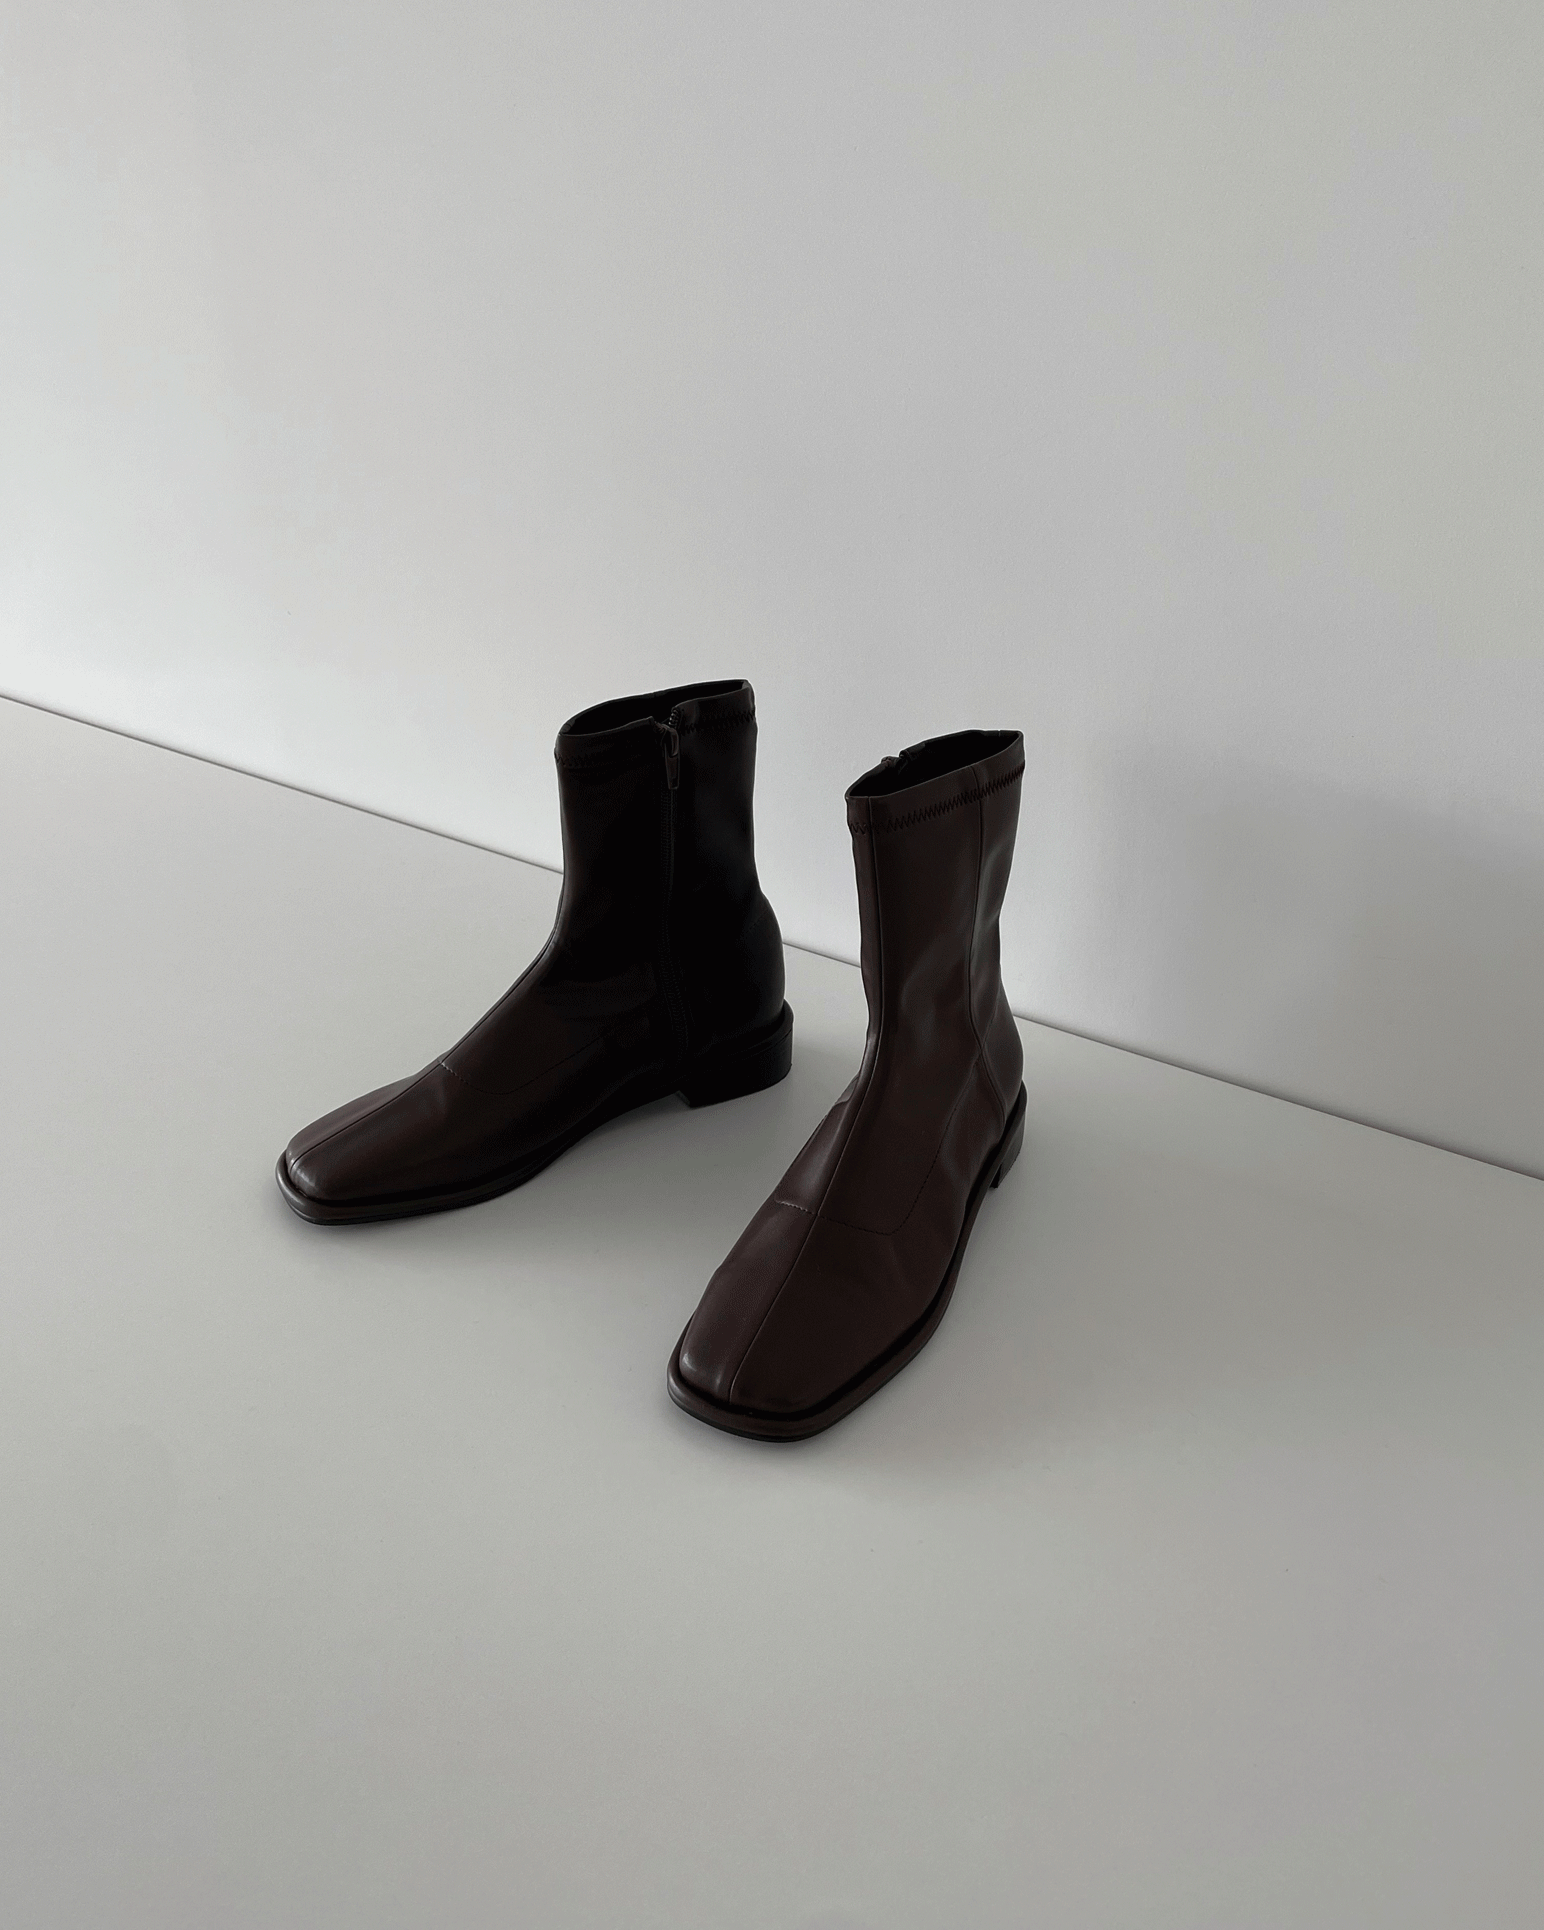 Found boots